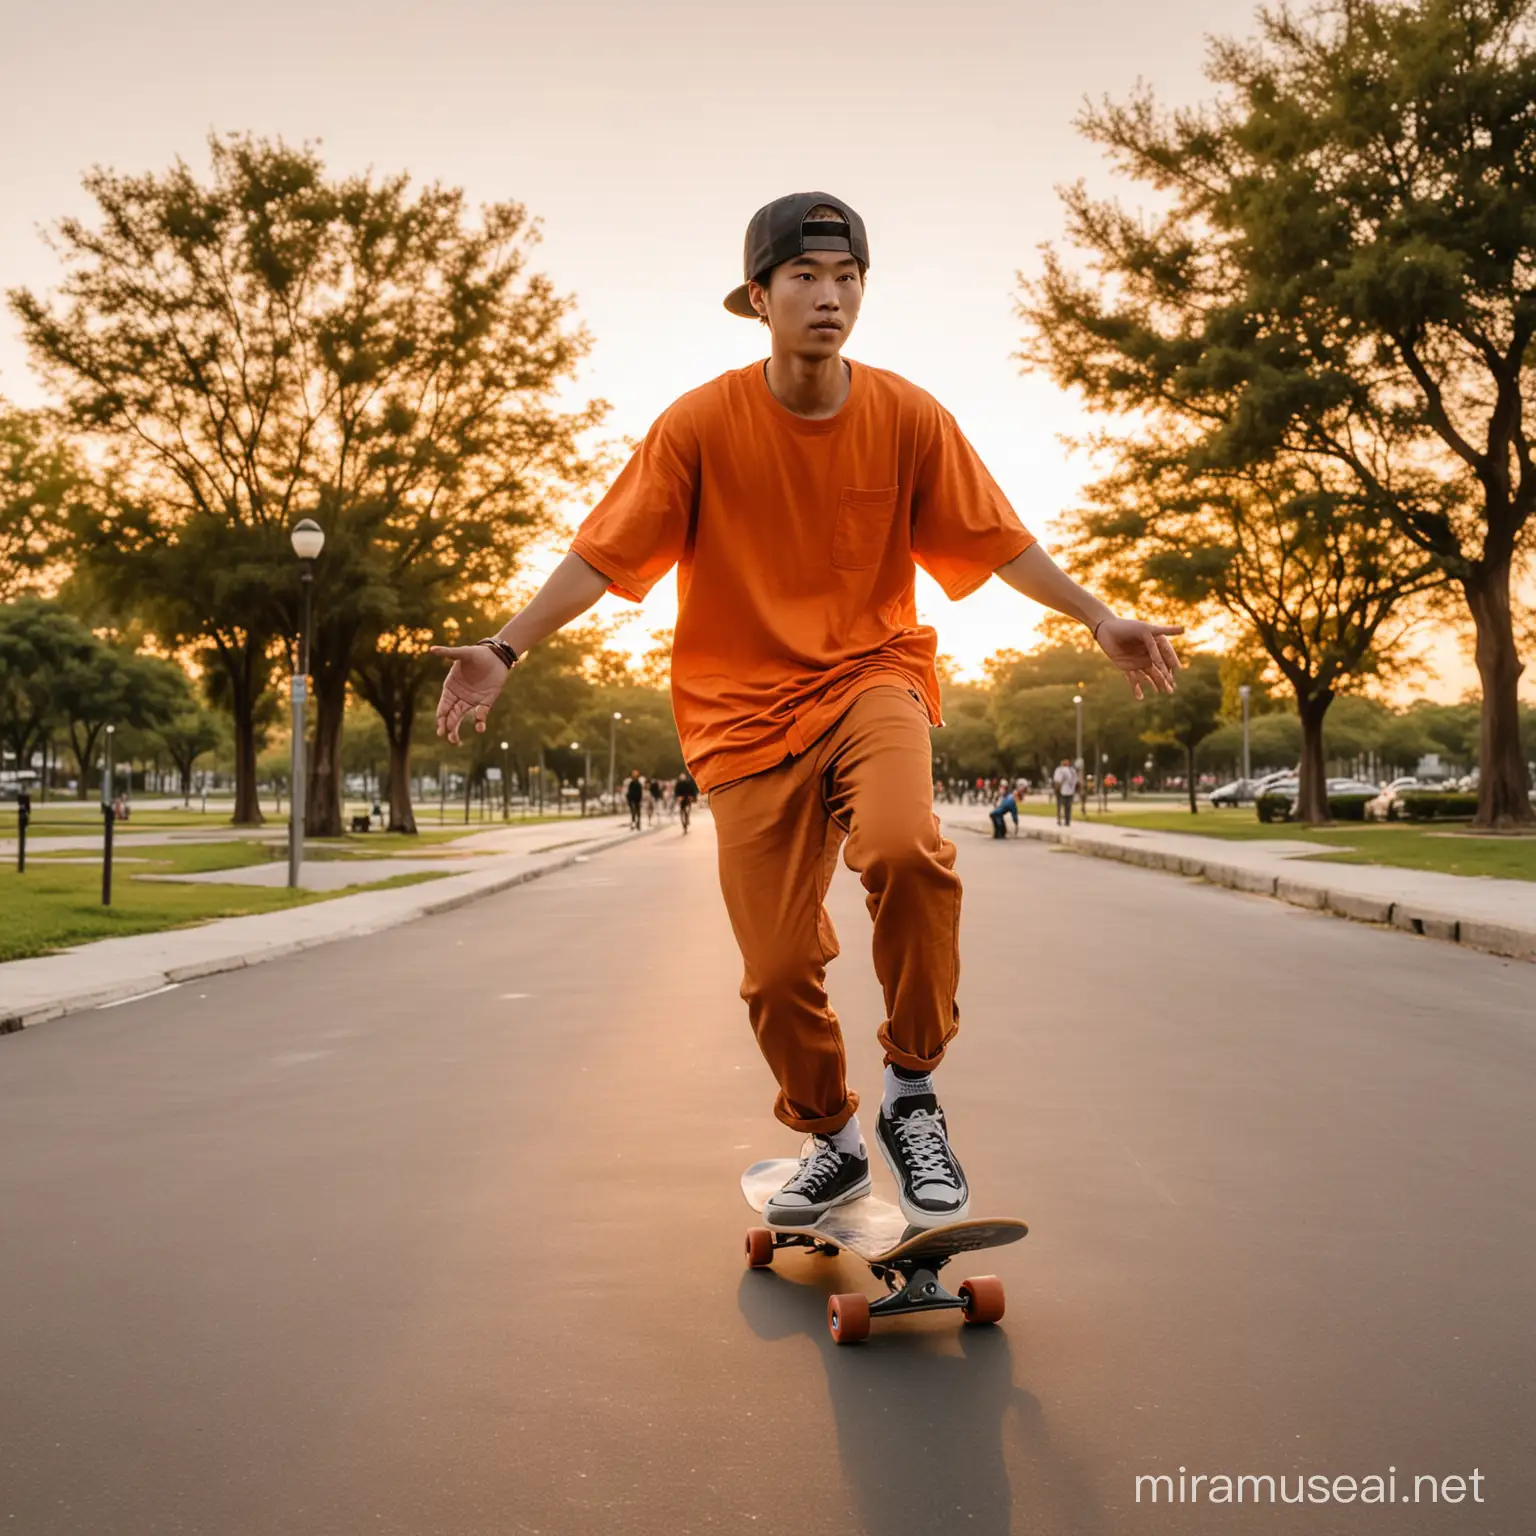 thiết kế cho tôi một chàng trai
châu á mặc đồ tone cam, đang trượt ván trượt ở công viên trong buổi chiều hoàng hôn với góc chụp rộng